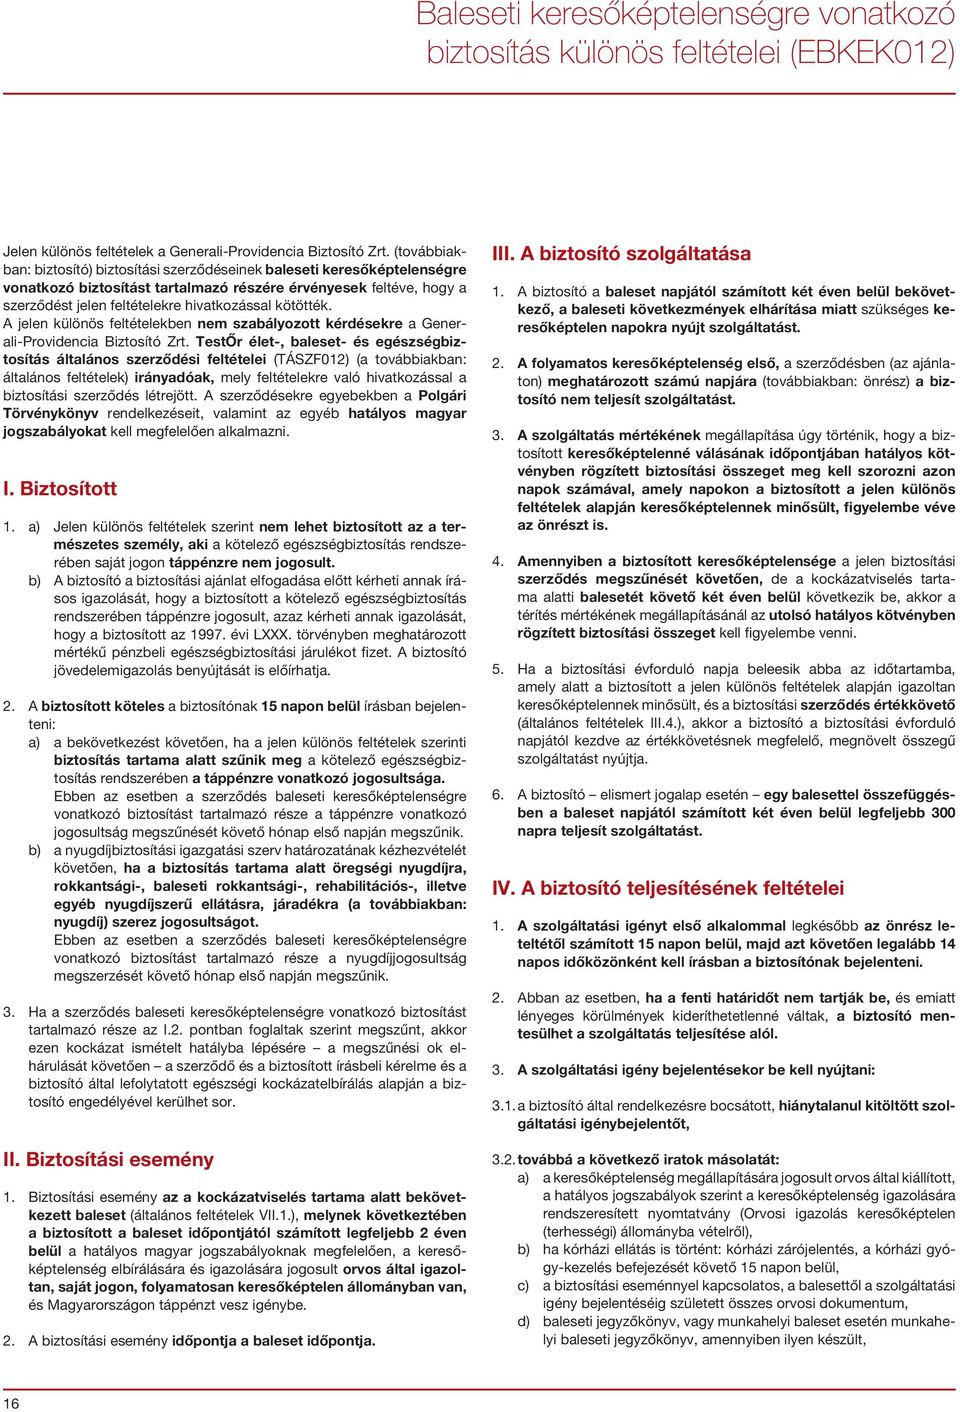 TestŐr élet-, baleset- és egészségbiztosítás általános szerződési feltételei (TÁSZF012) (a továbbiakban: általános feltételek) irányadóak, mely feltételekre való hivatkozással a biztosítási szerződés